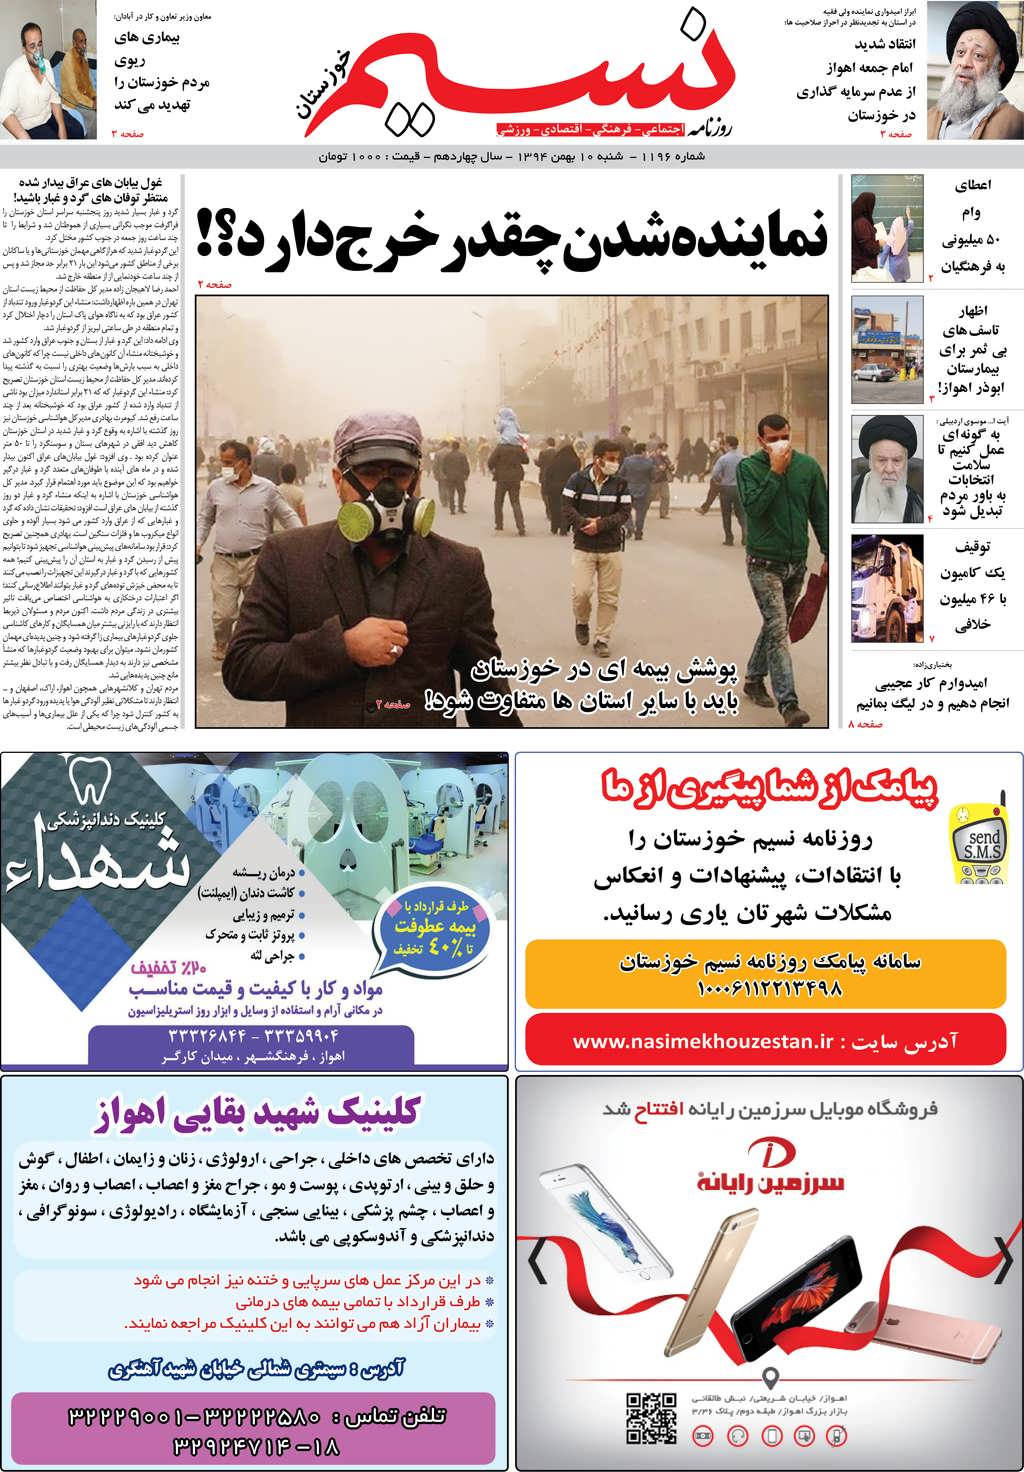 صفحه اصلی روزنامه نسیم شماره 1196